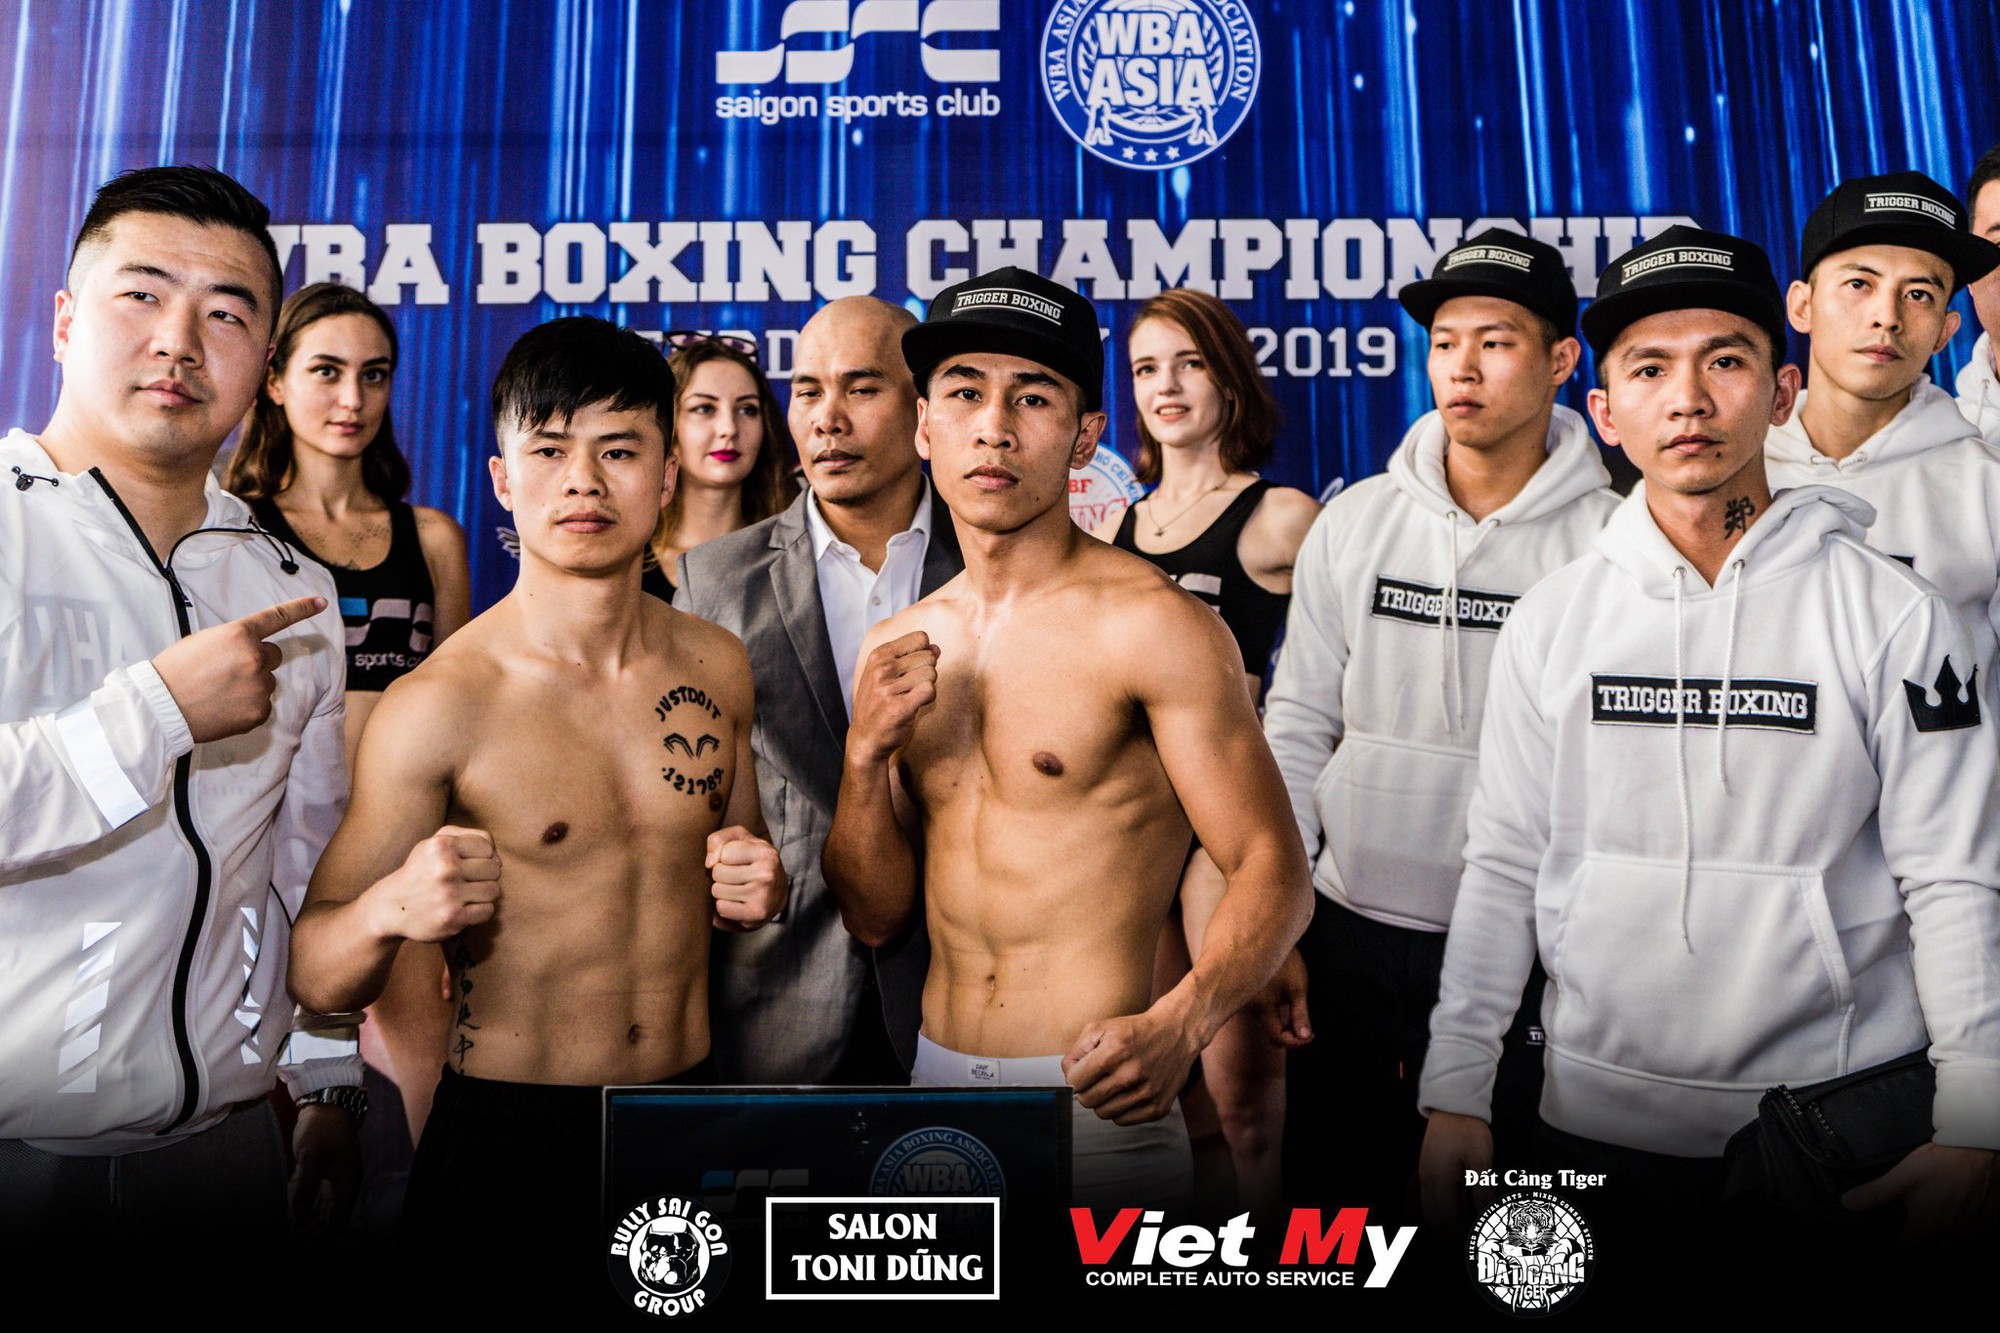 Nhà vô địch châu Á Trần Văn Thảo tái xuất gặp đối thủ Trung Quốc, sẵn sàng làm rạng danh cho boxing Việt - Ảnh 1.